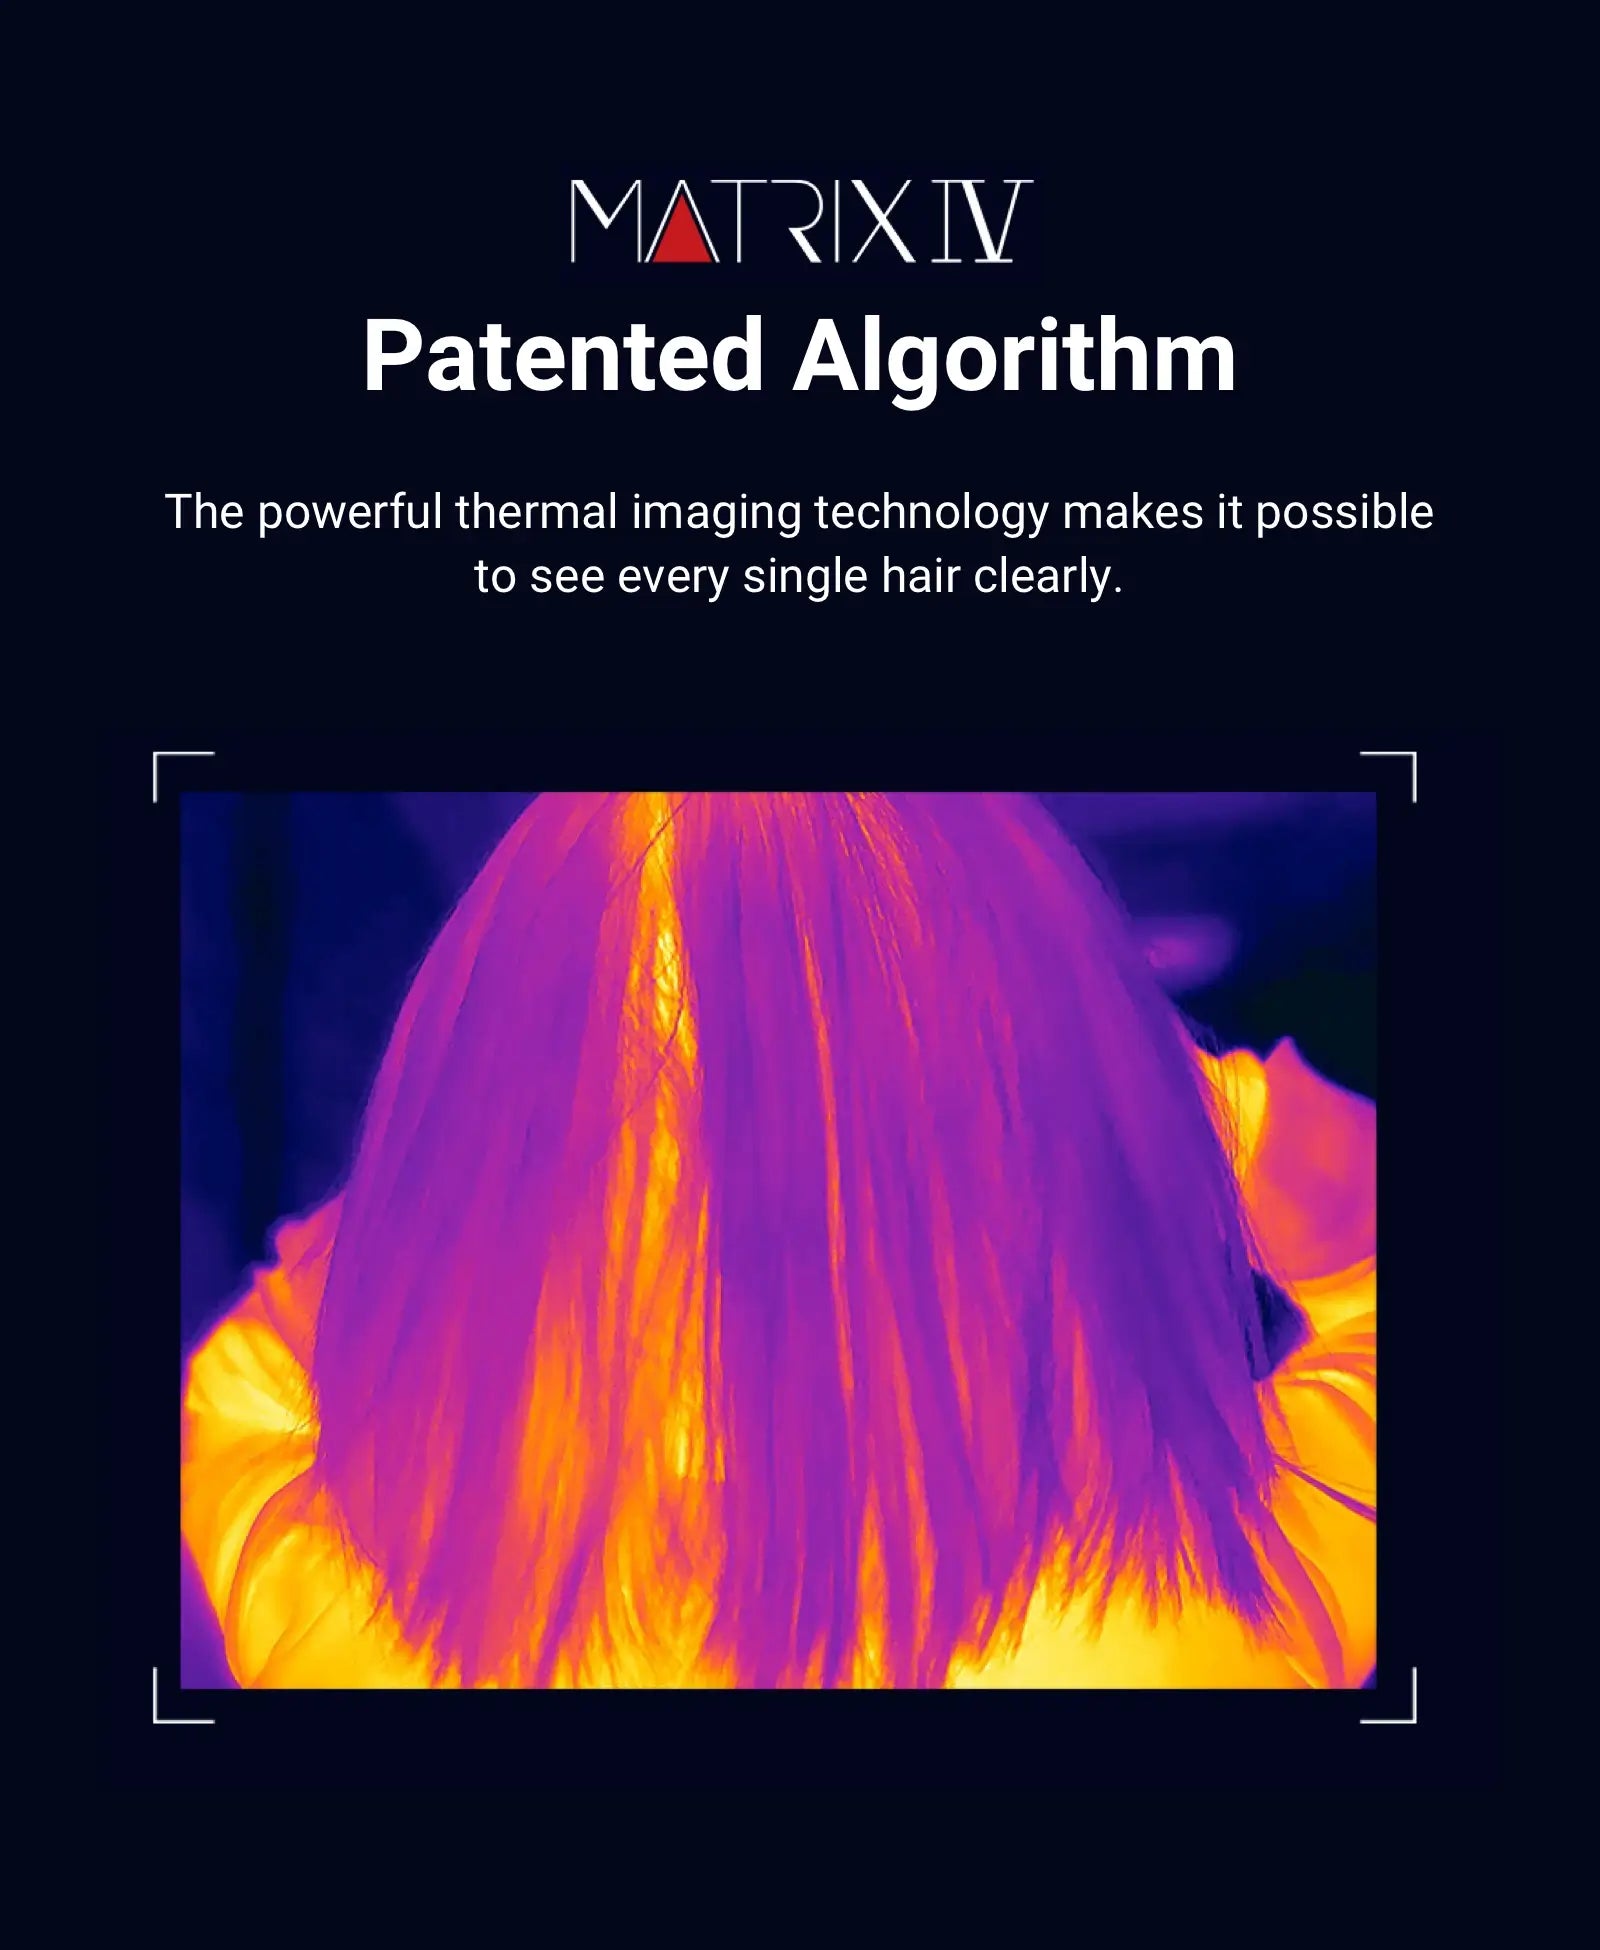 Matrixiv Patented Algorithm